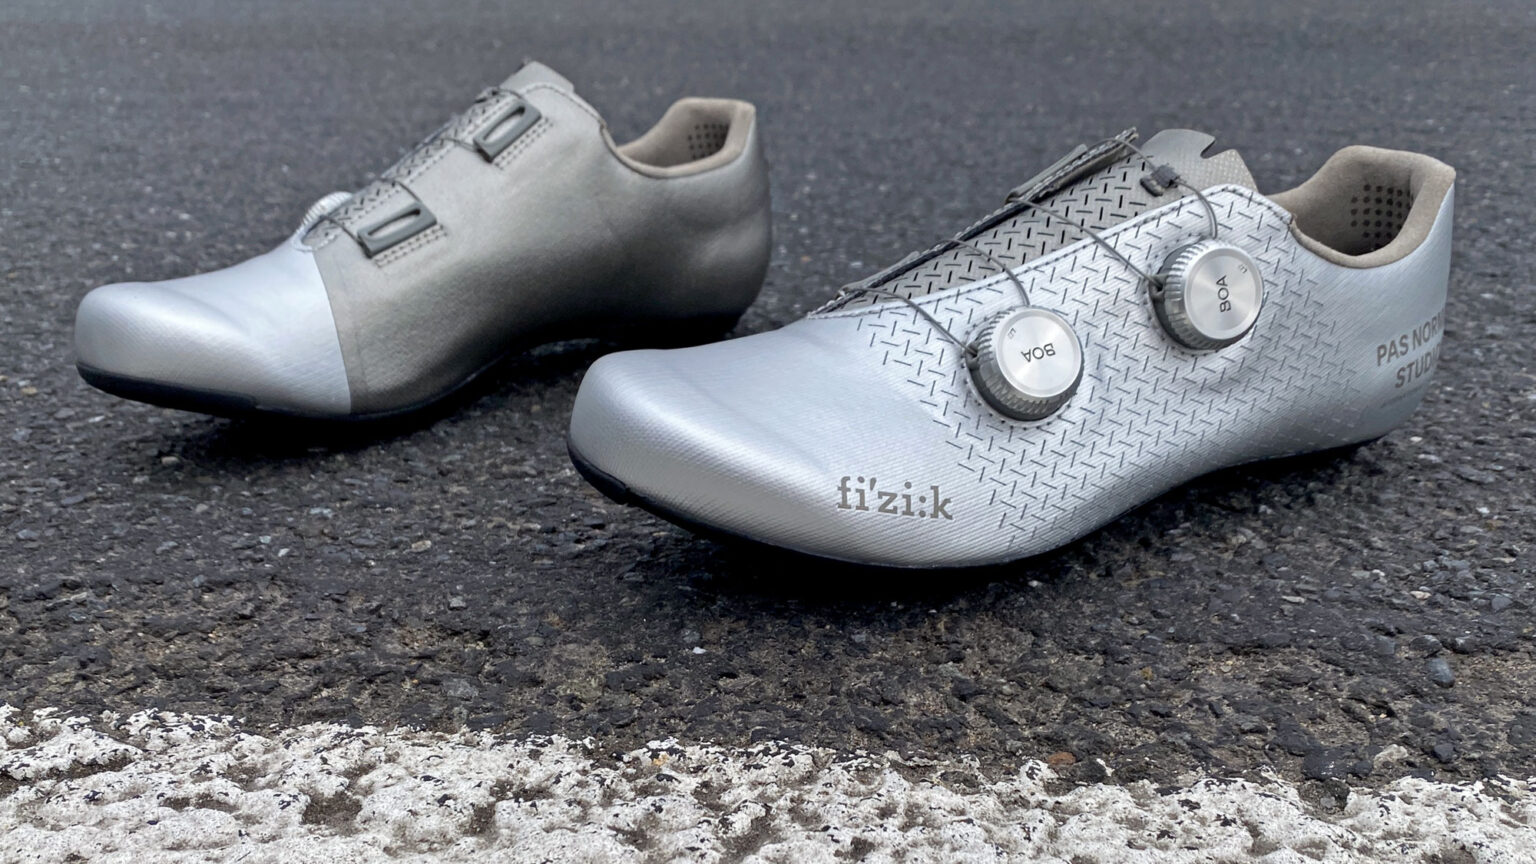 Fizik x Pas Normal Studios Mechanism carbon road shoes, on asphalt